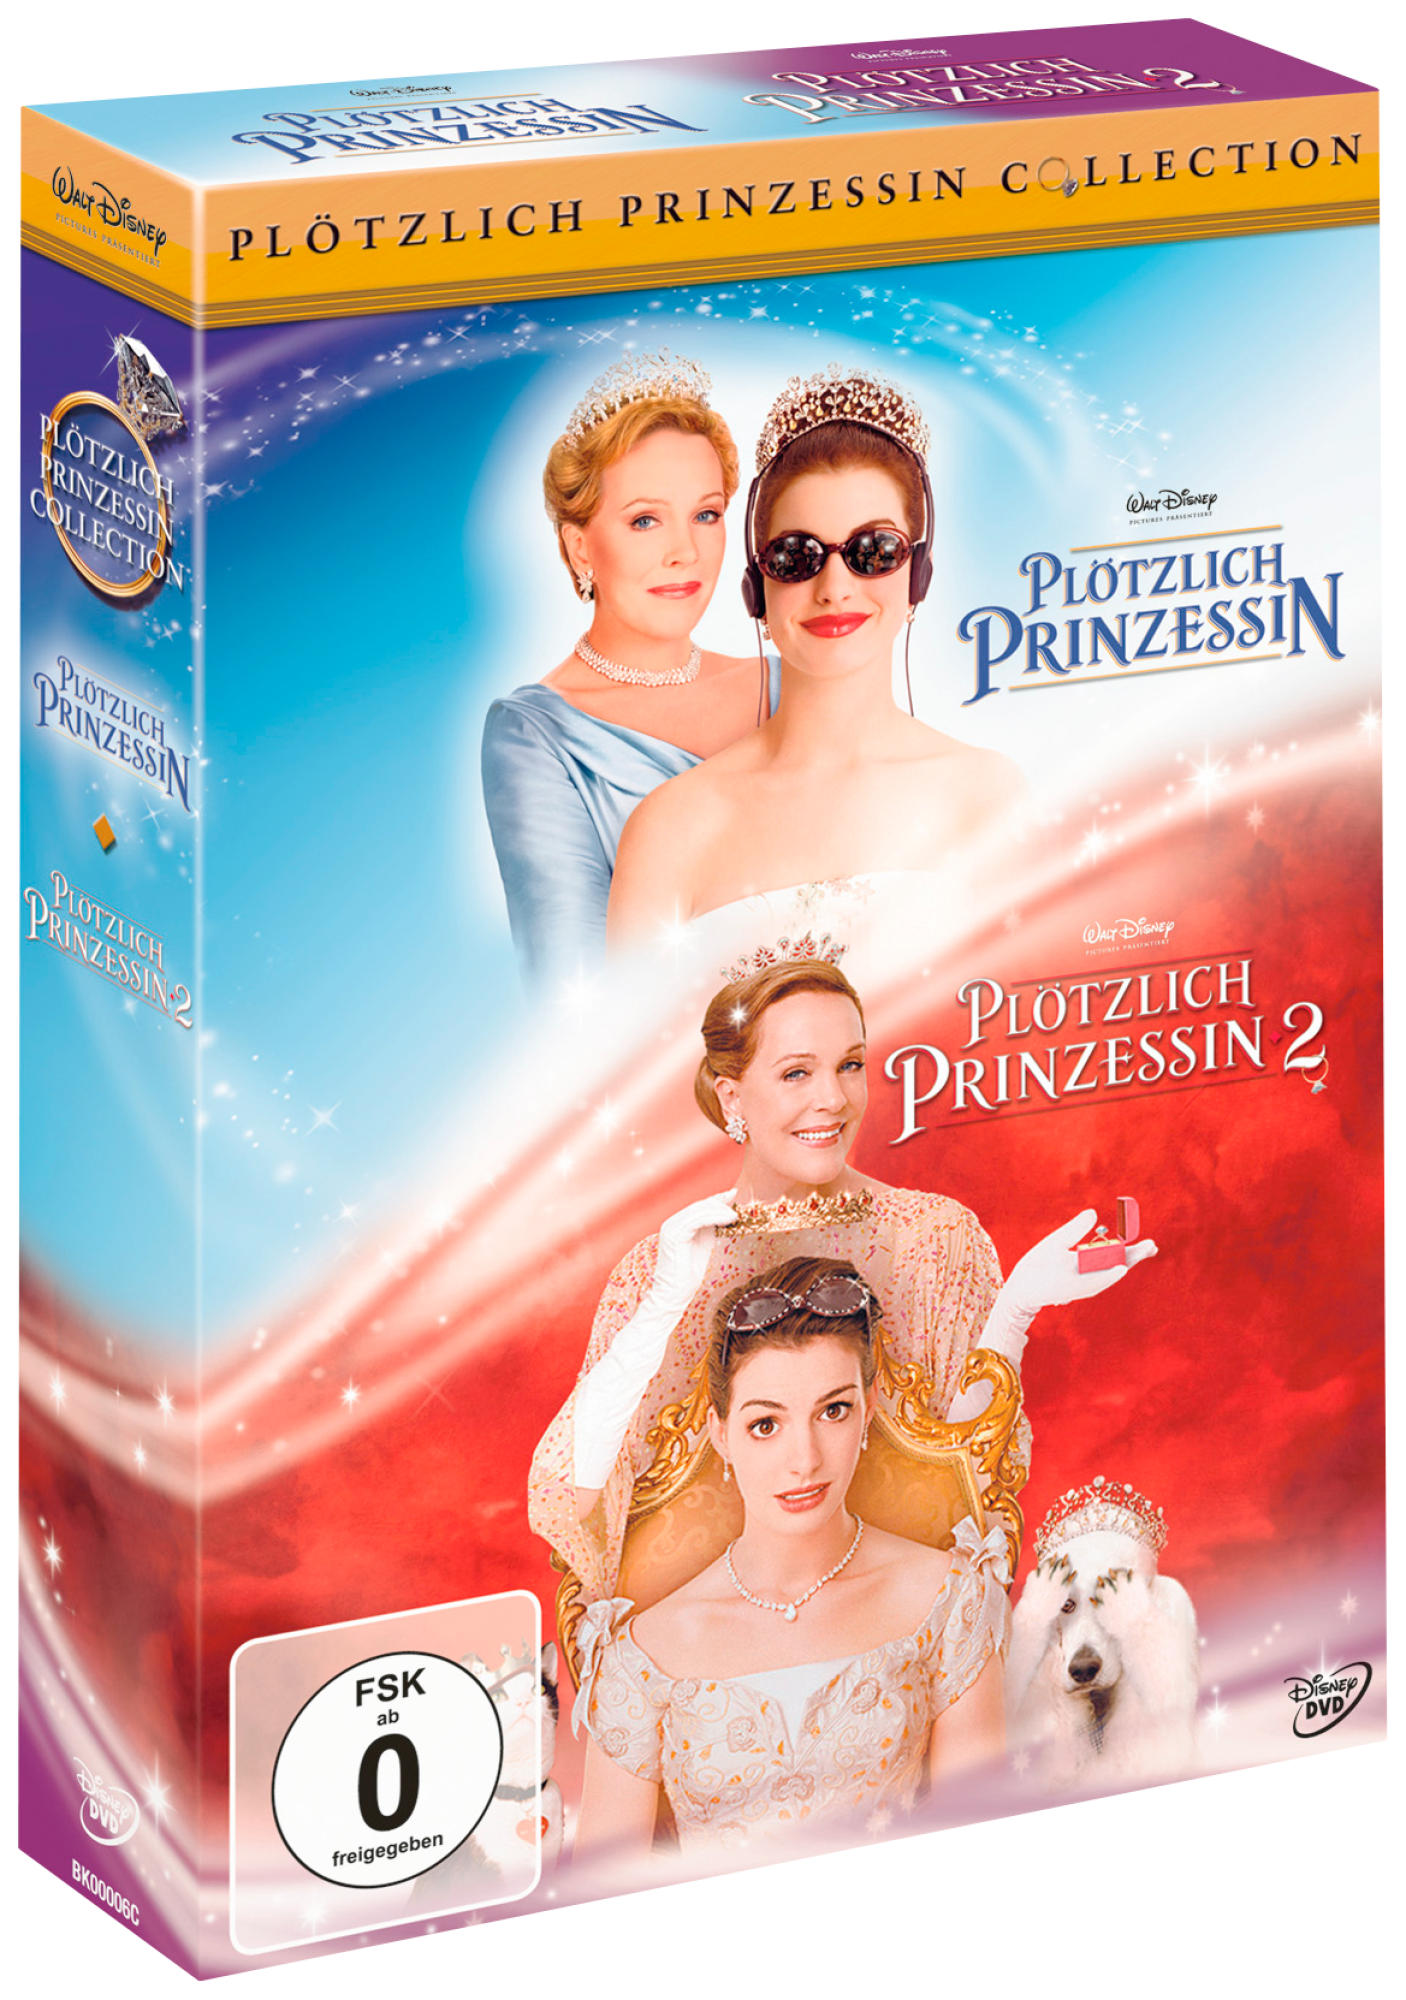 DVD Prinzessin Collection Plötzlich